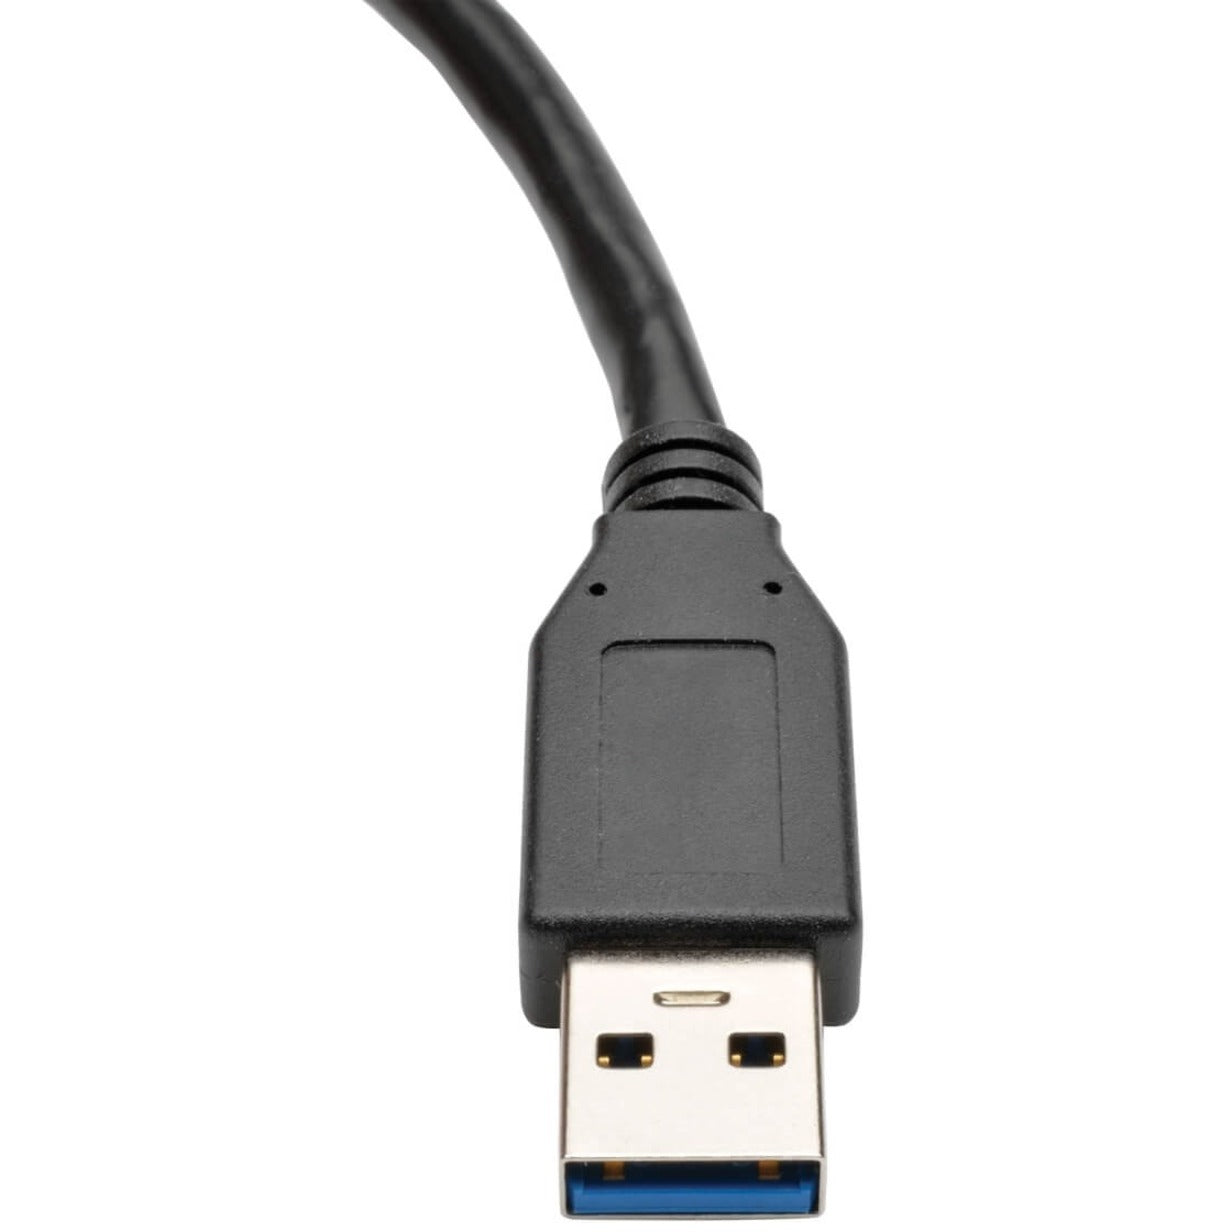 تريب لايت U324-06N-BK كيبل تمديد USB 3.0 سوبر سبيد تايب-A (ذكر/أنثى)، أسود، 6 بوصة. العلامة التجارية: تريب لايت.